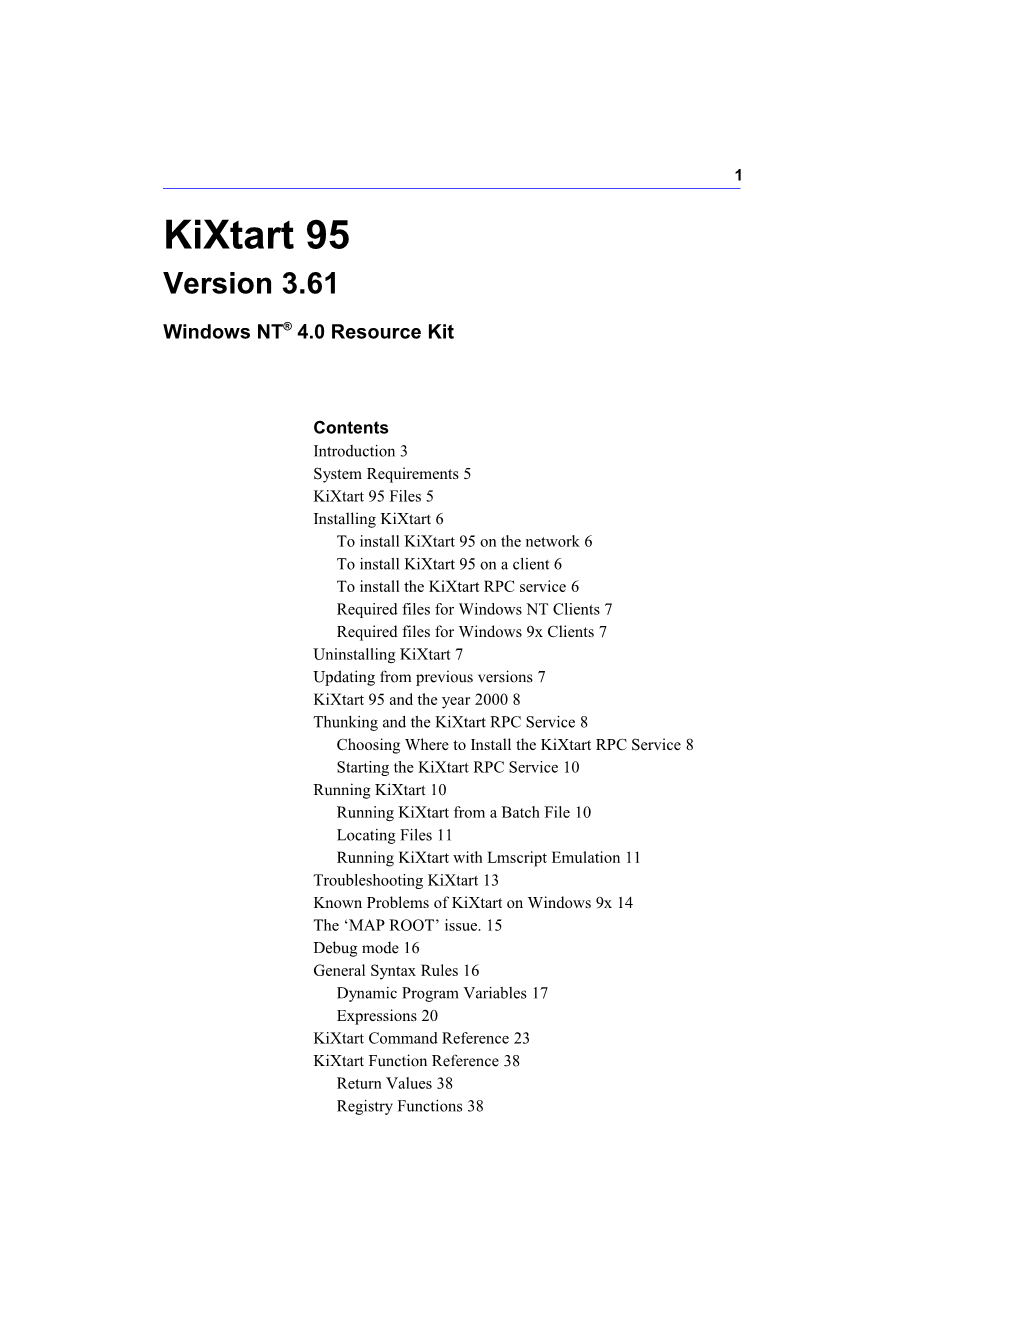 Kixtart95 Version 3.61 Windowsnt 4.0 Resource Kit